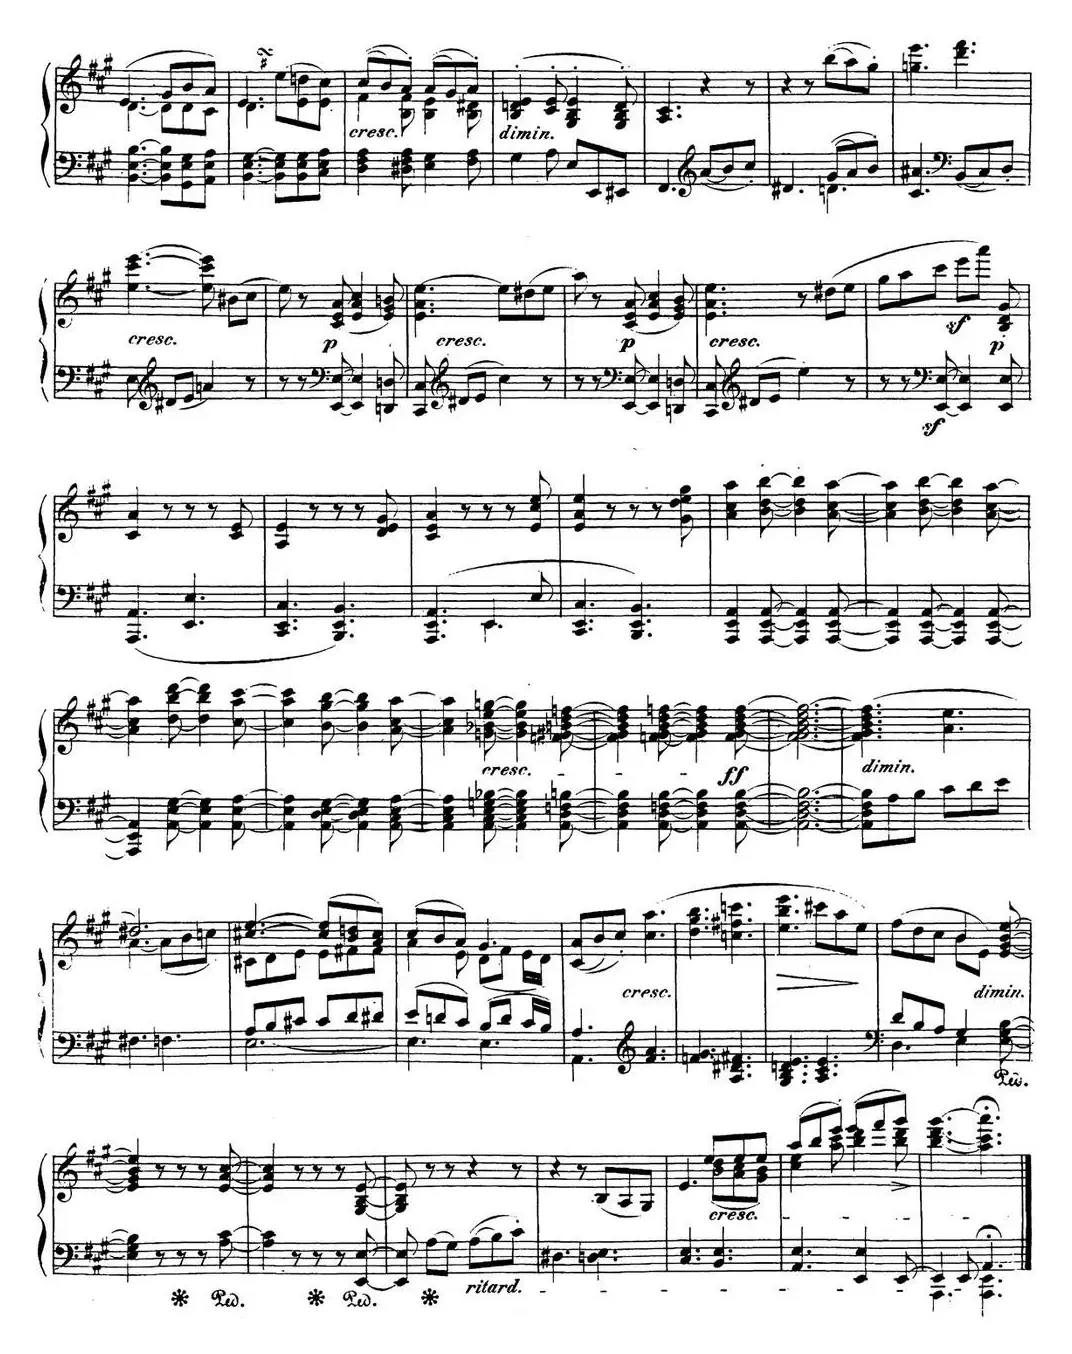 贝多芬钢琴奏鸣曲28 A大调 Op.101 A major